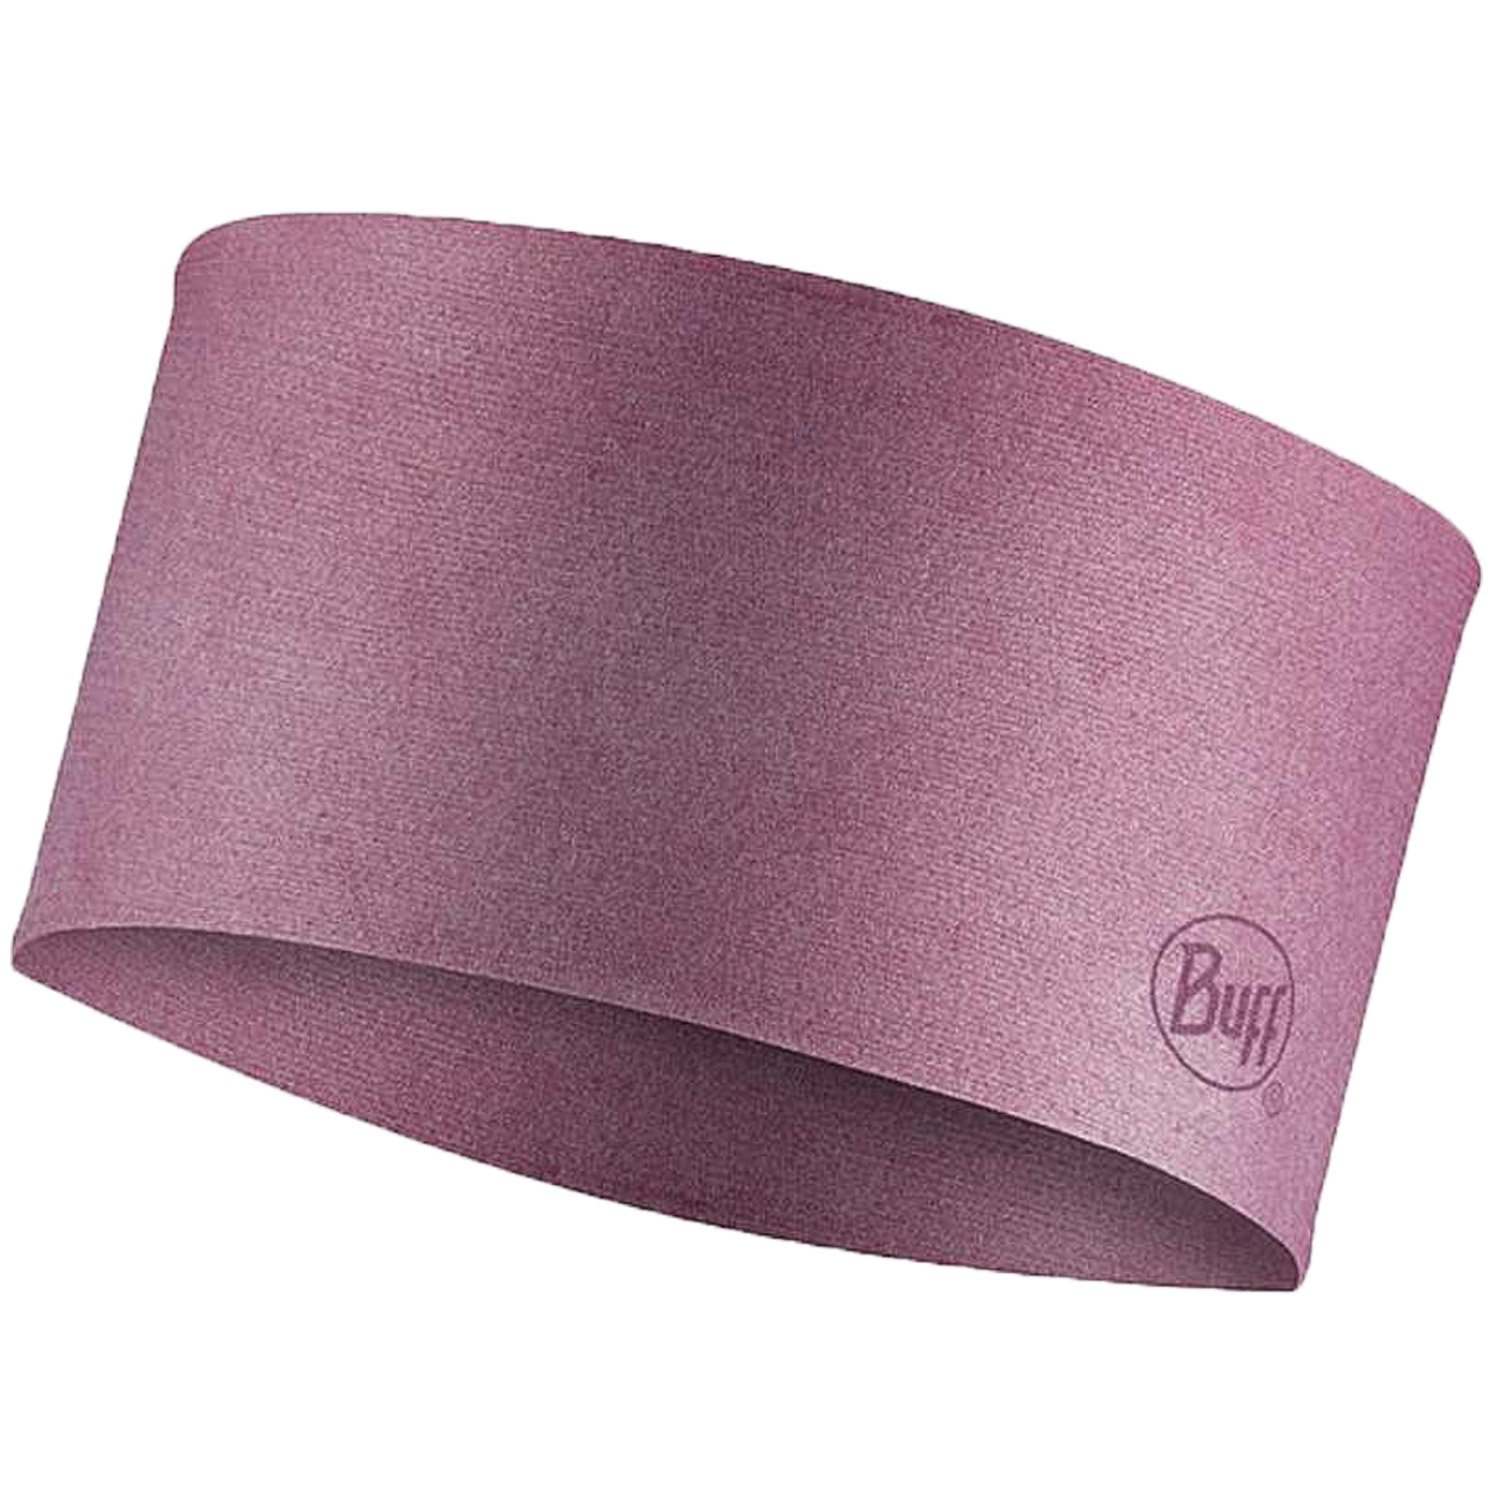 Повязка Buff Coolnet Uv Wide Headband Tulip, розовый, 130056.650.10.00 повязка buff coolnet uv headband crystal multi 120876 555 10 00